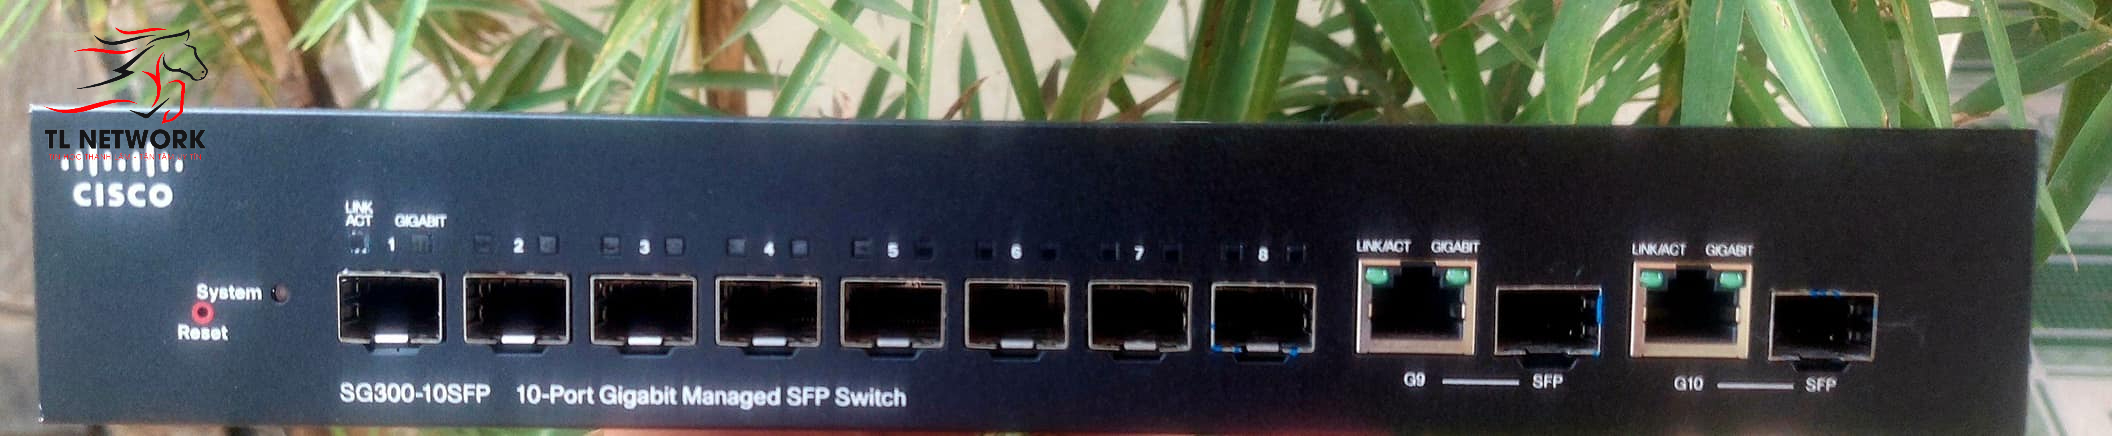 Switch Cisco SG300-10SFP-K9 gồm 8 Cổng quang Gigabit SFP và 2 Combo cổng